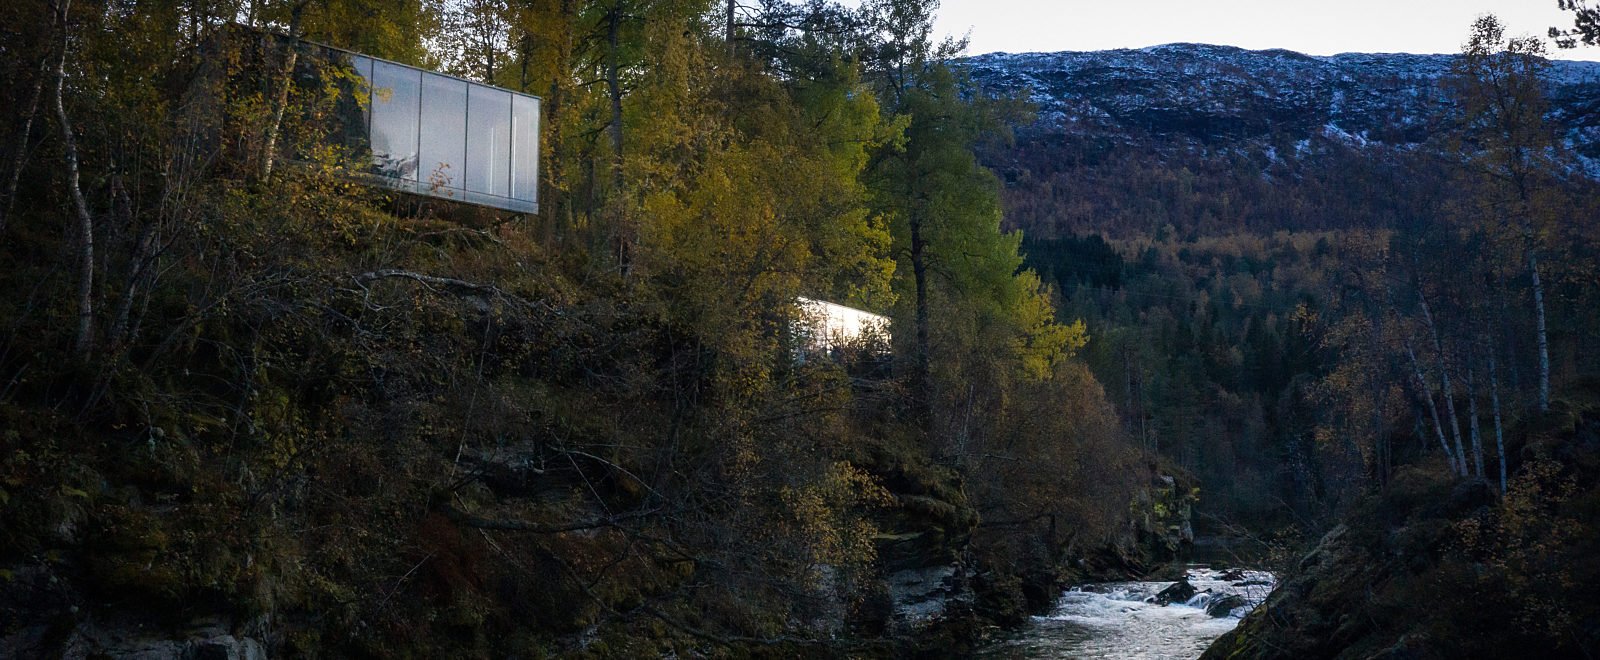   Juvet Landscape Hotel  | Valldal, Norway 